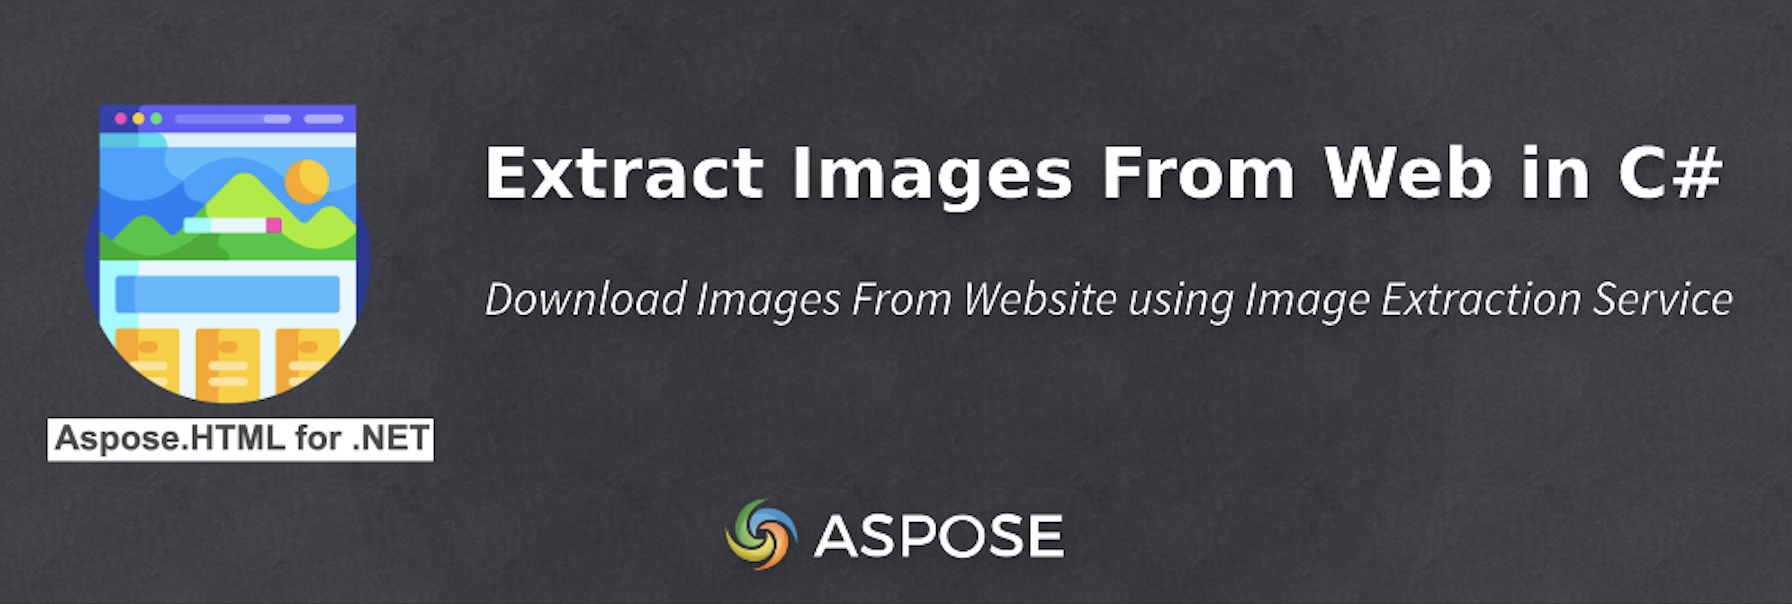 Stáhněte si obrázky z webu v C#